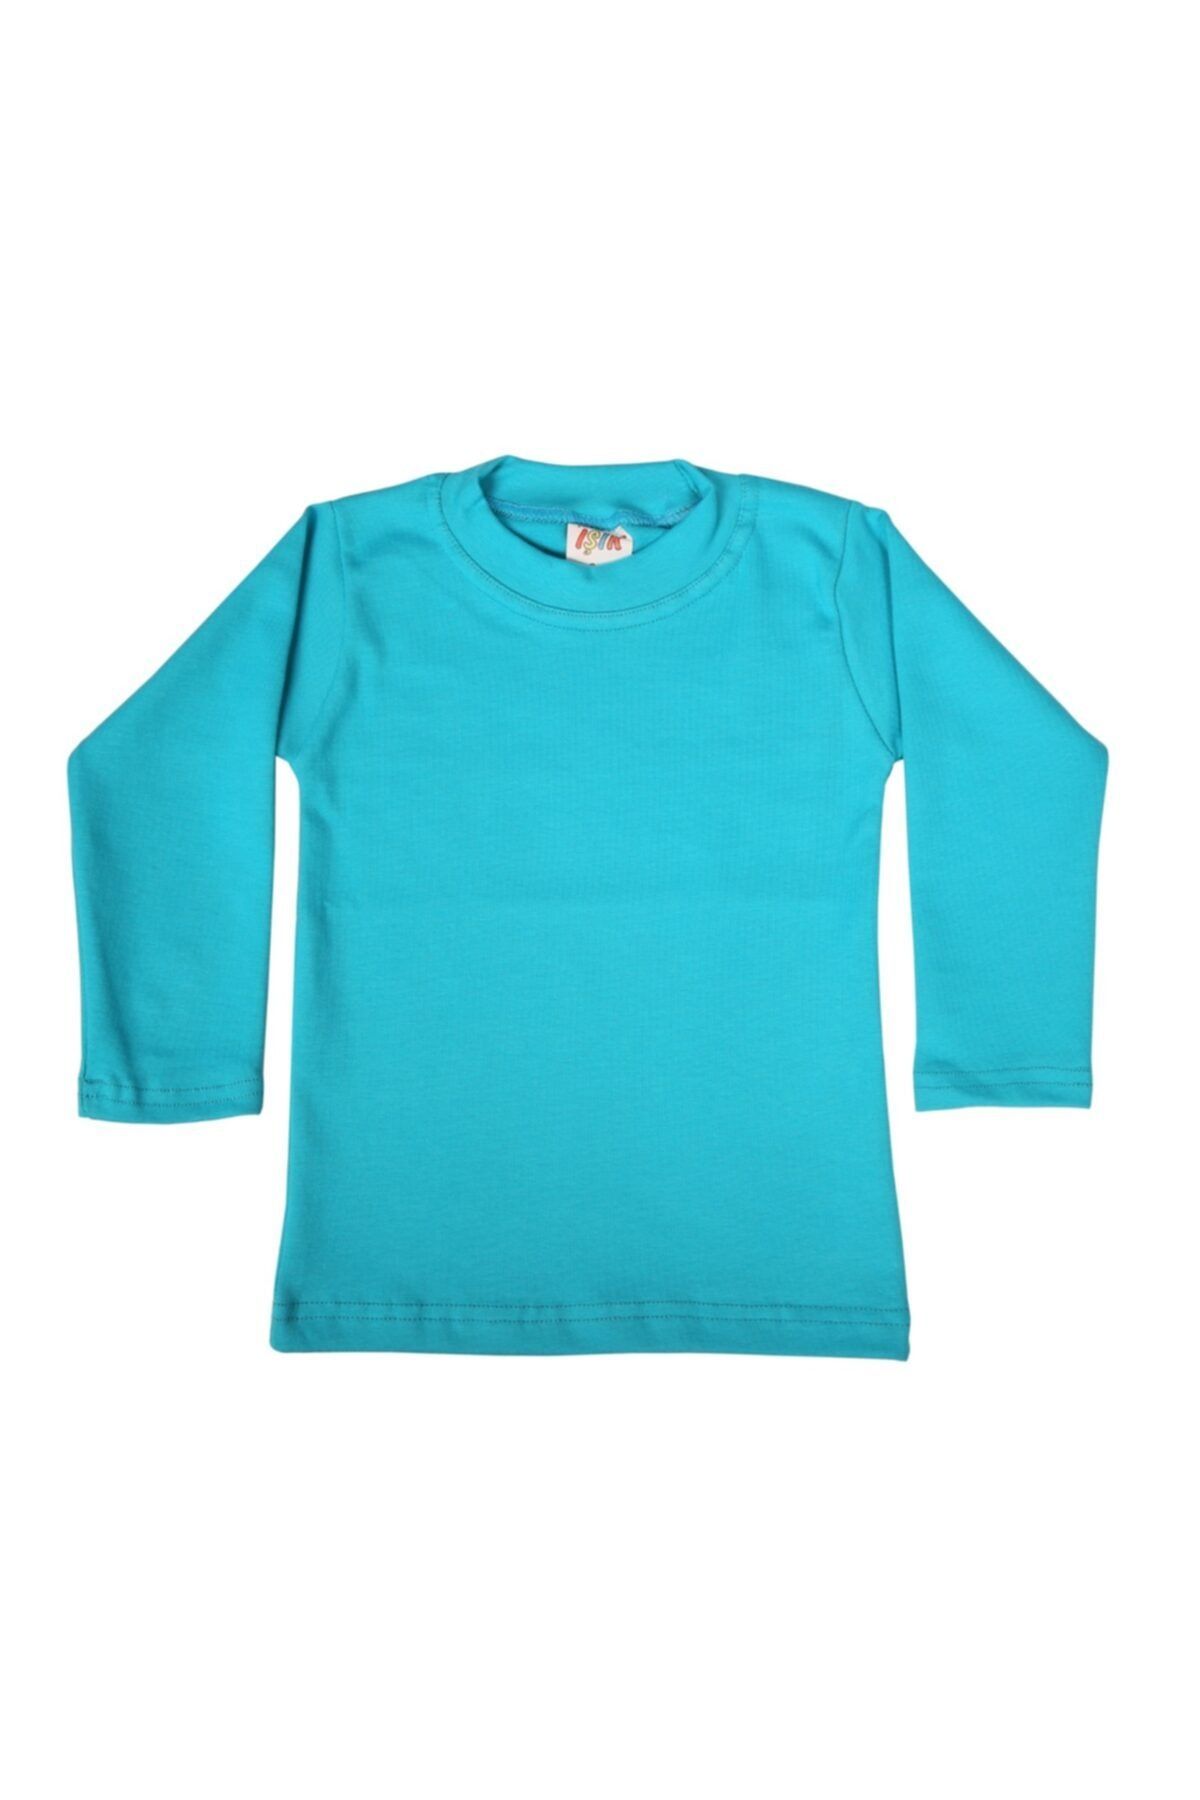 Yeni Işık Tekstil 3-4 Yaş Likralı Çocuk T-shirt & Body Mavi